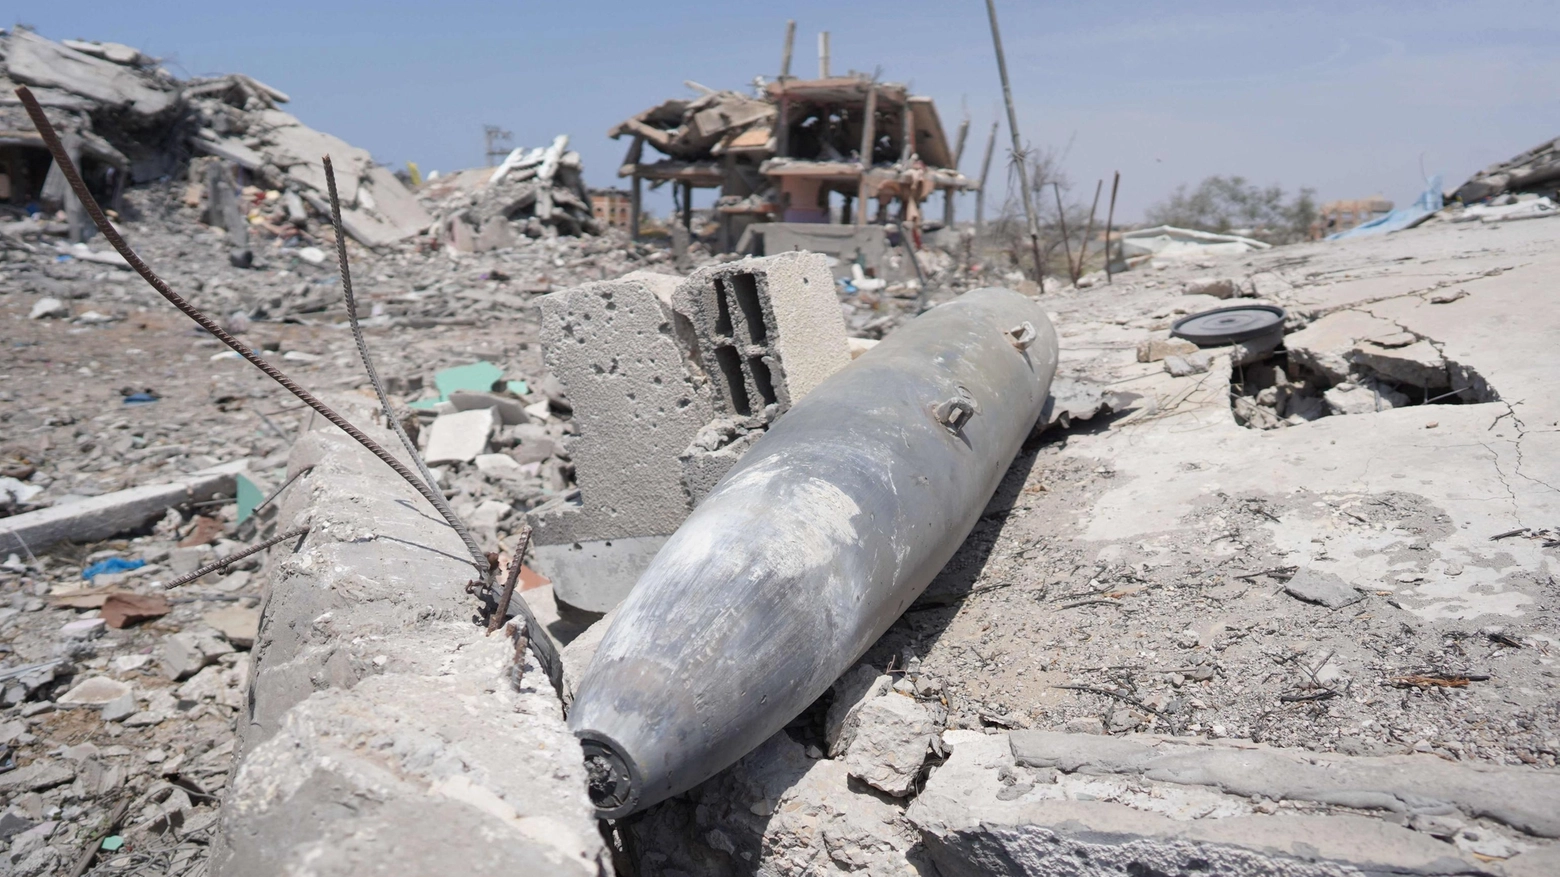 Gli Houthi hanno lanciato dallo Yemen missili balistici e droni. Usa: centinaia di avvocati e funzionari scrivono a Blinken: “Stop all’invio di armi a Israele”